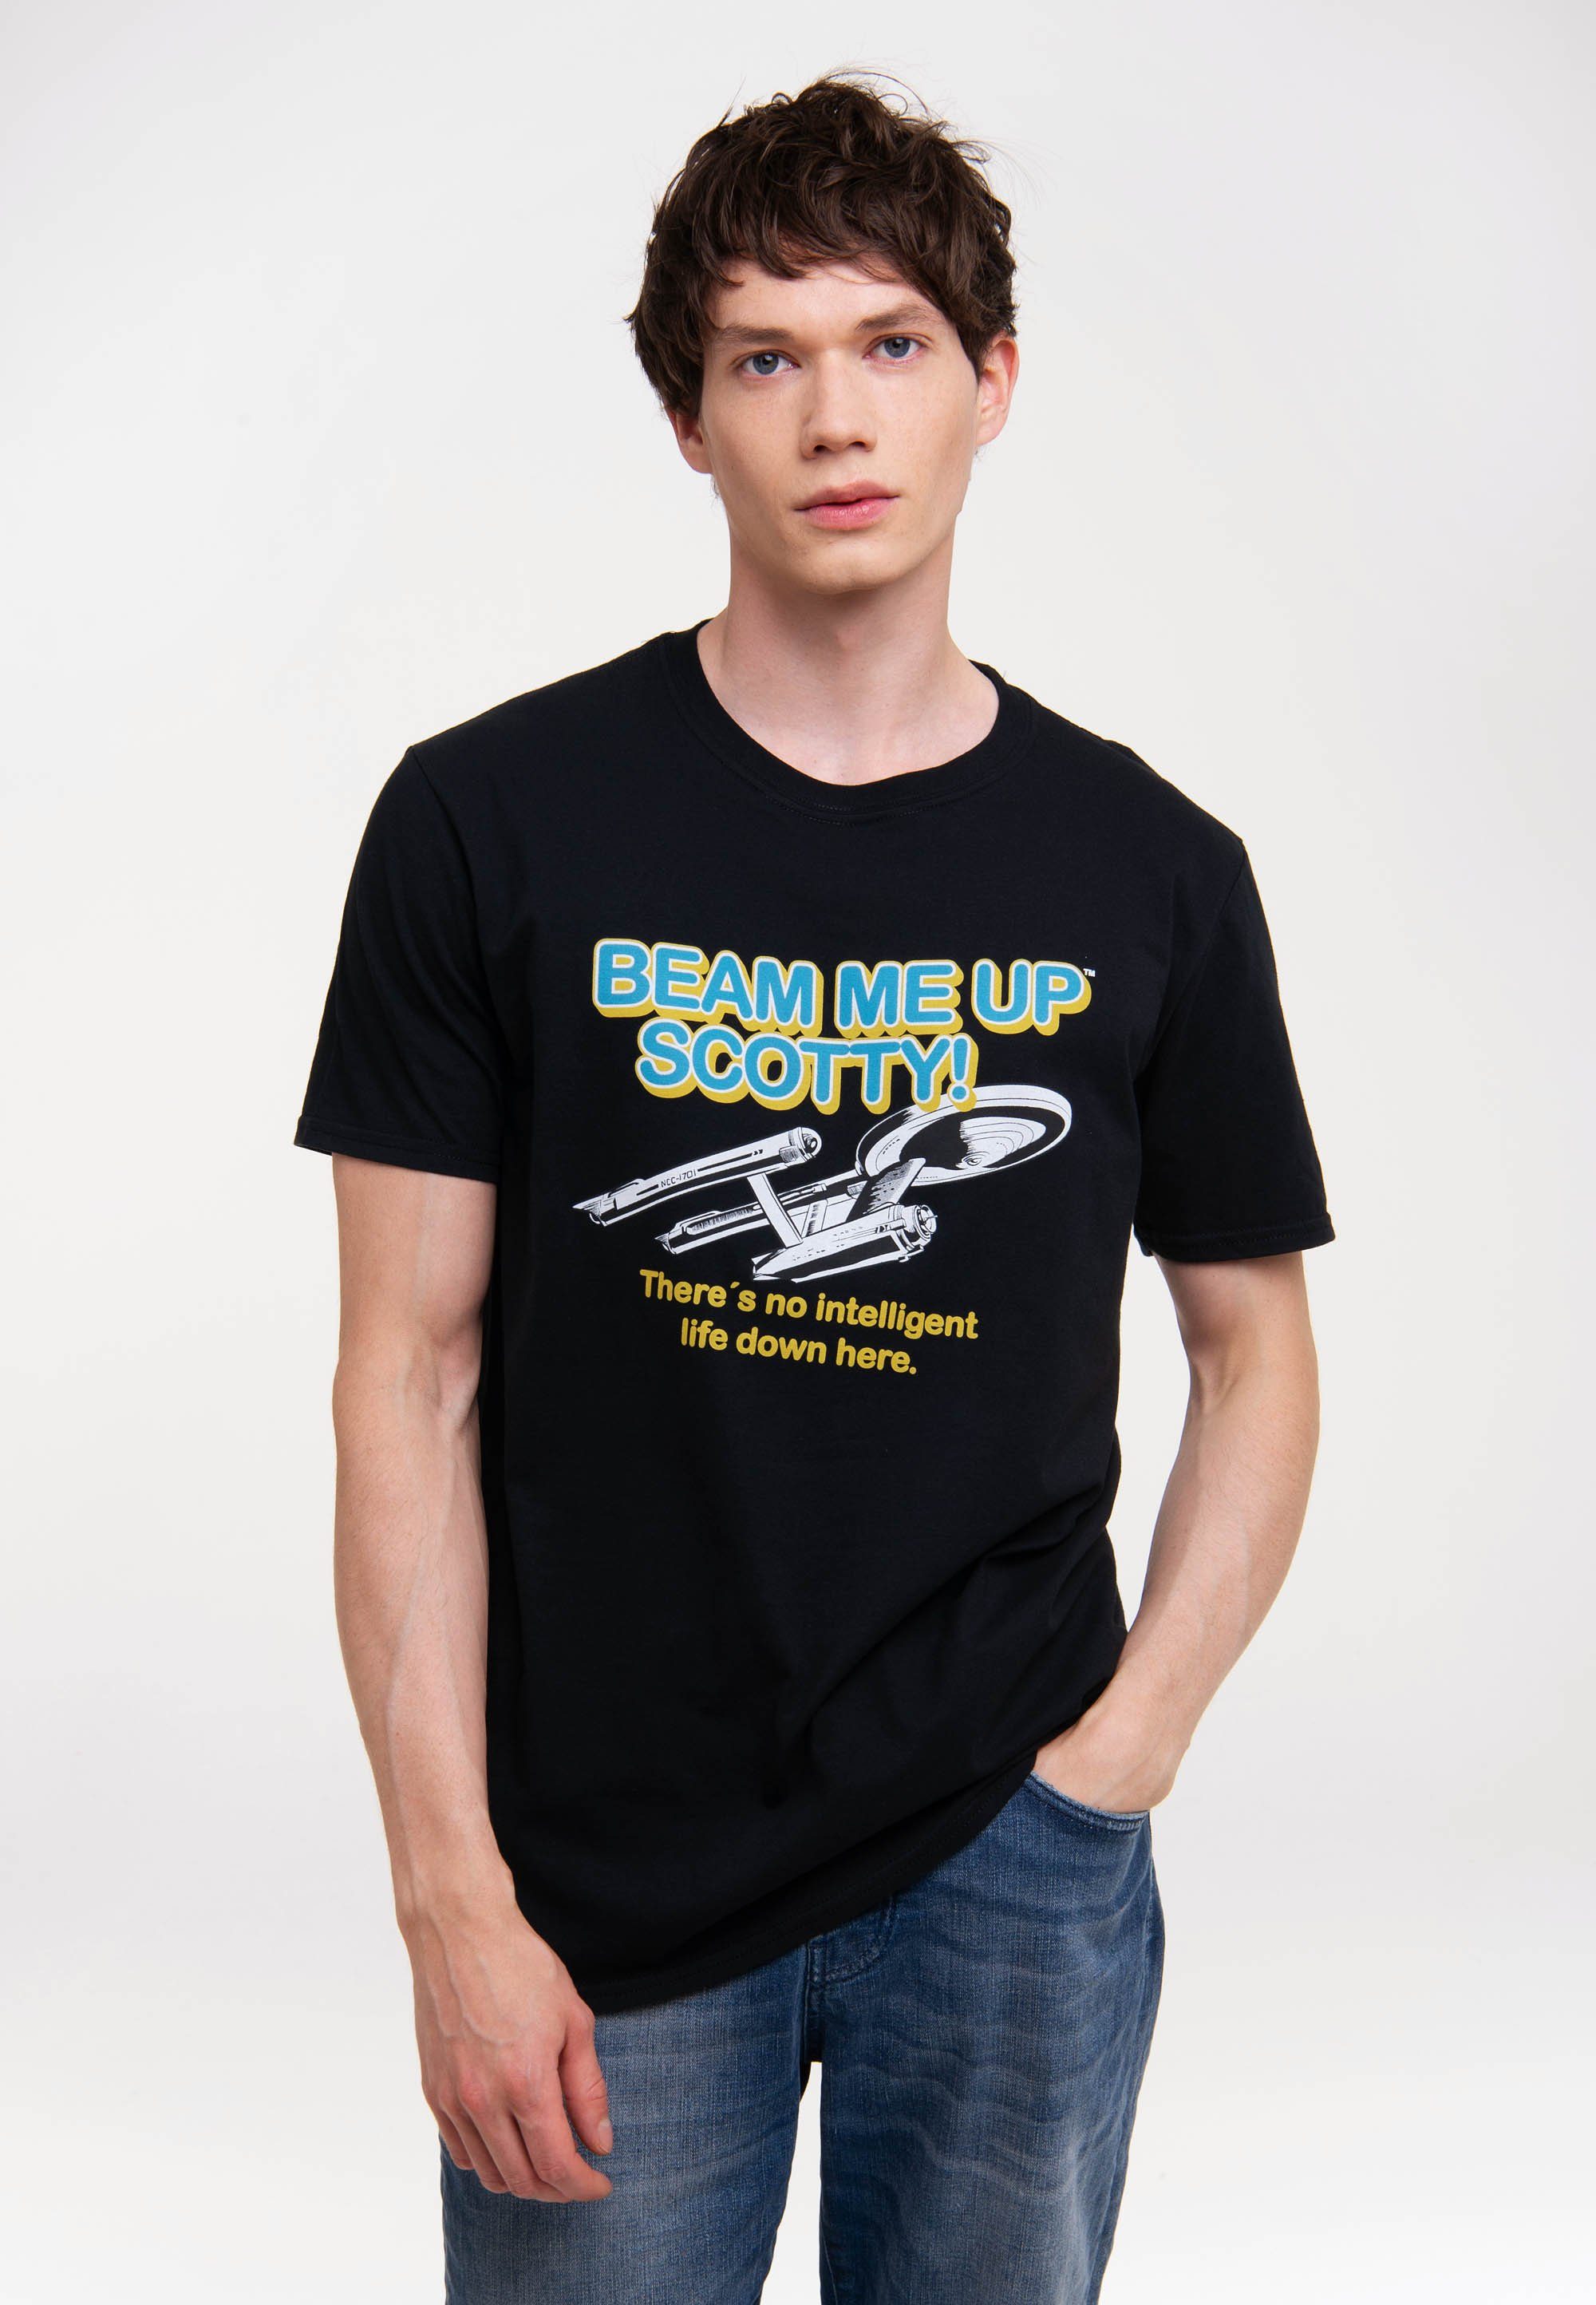 Star LOGOSHIRT Trek mit Up Beam Scotty-Logo Beam Scotty Me T-Shirt Up - Me